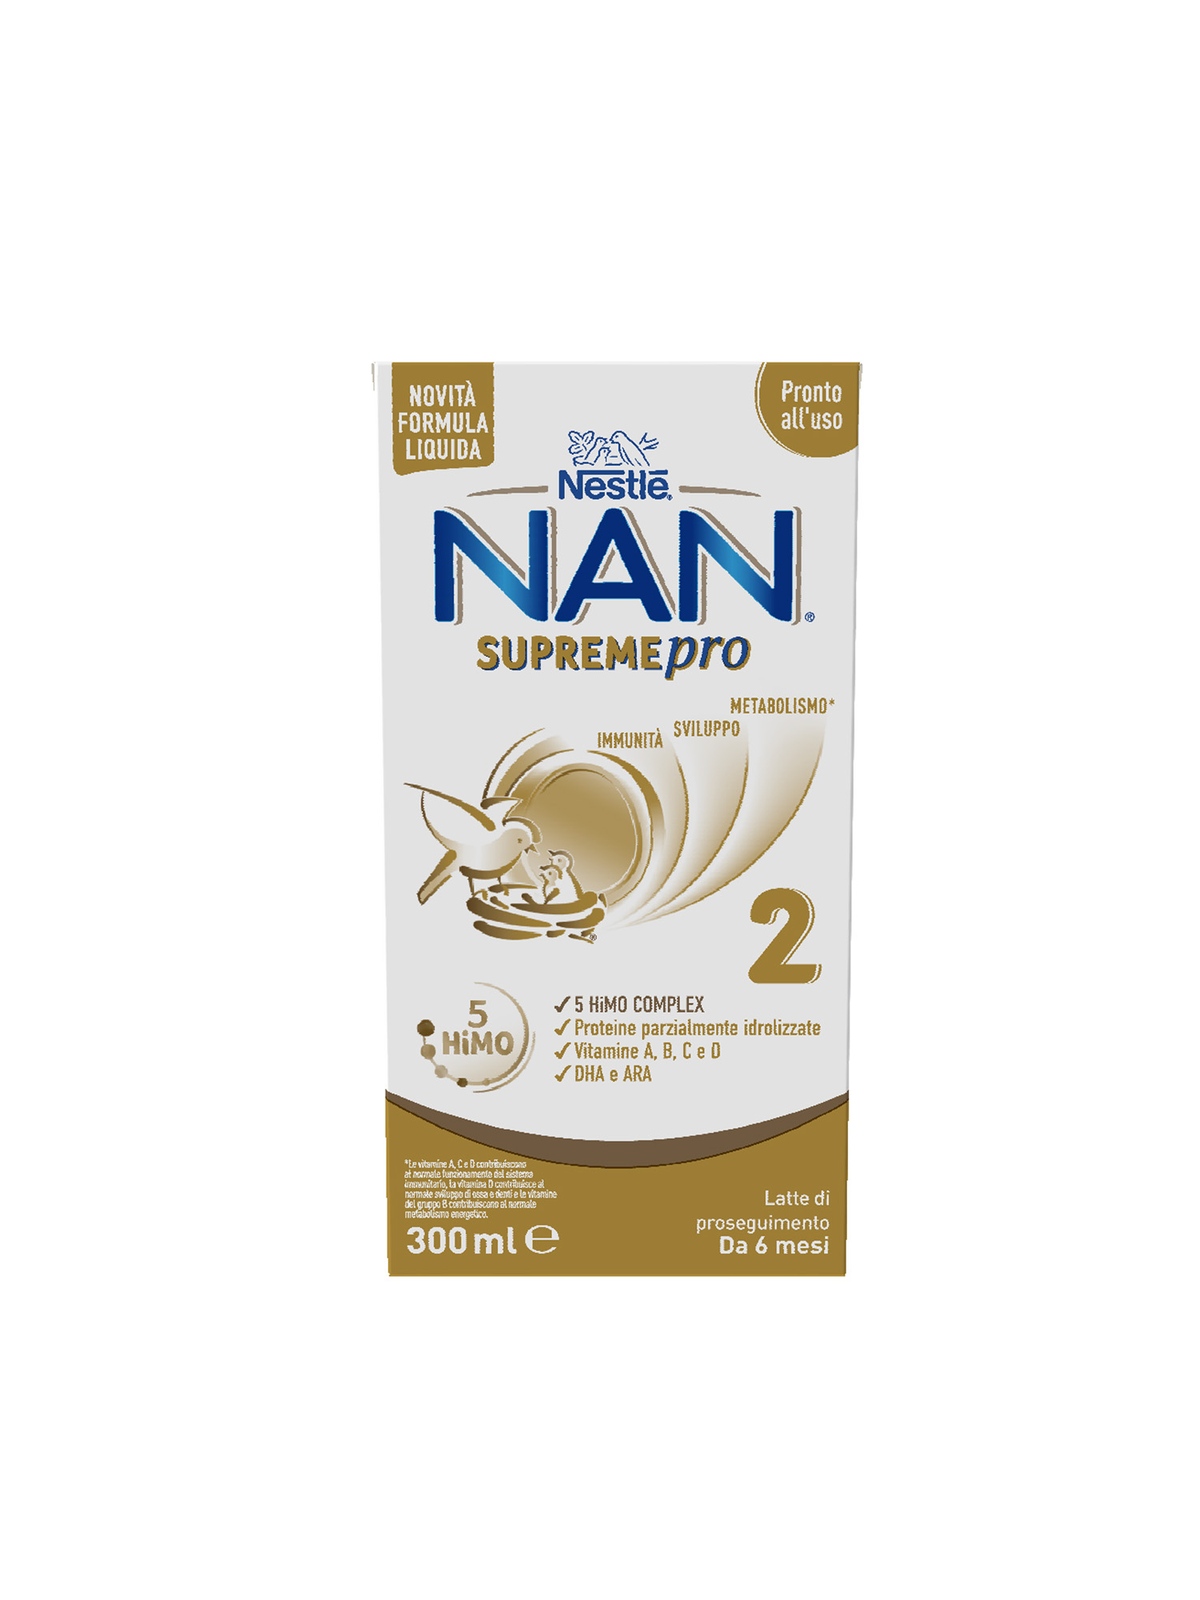 Nan supremepro 2 liquido, da 6 mesi. latte di proseguimento in formato liquido, brick da 300 ml - Nestlè - Nan